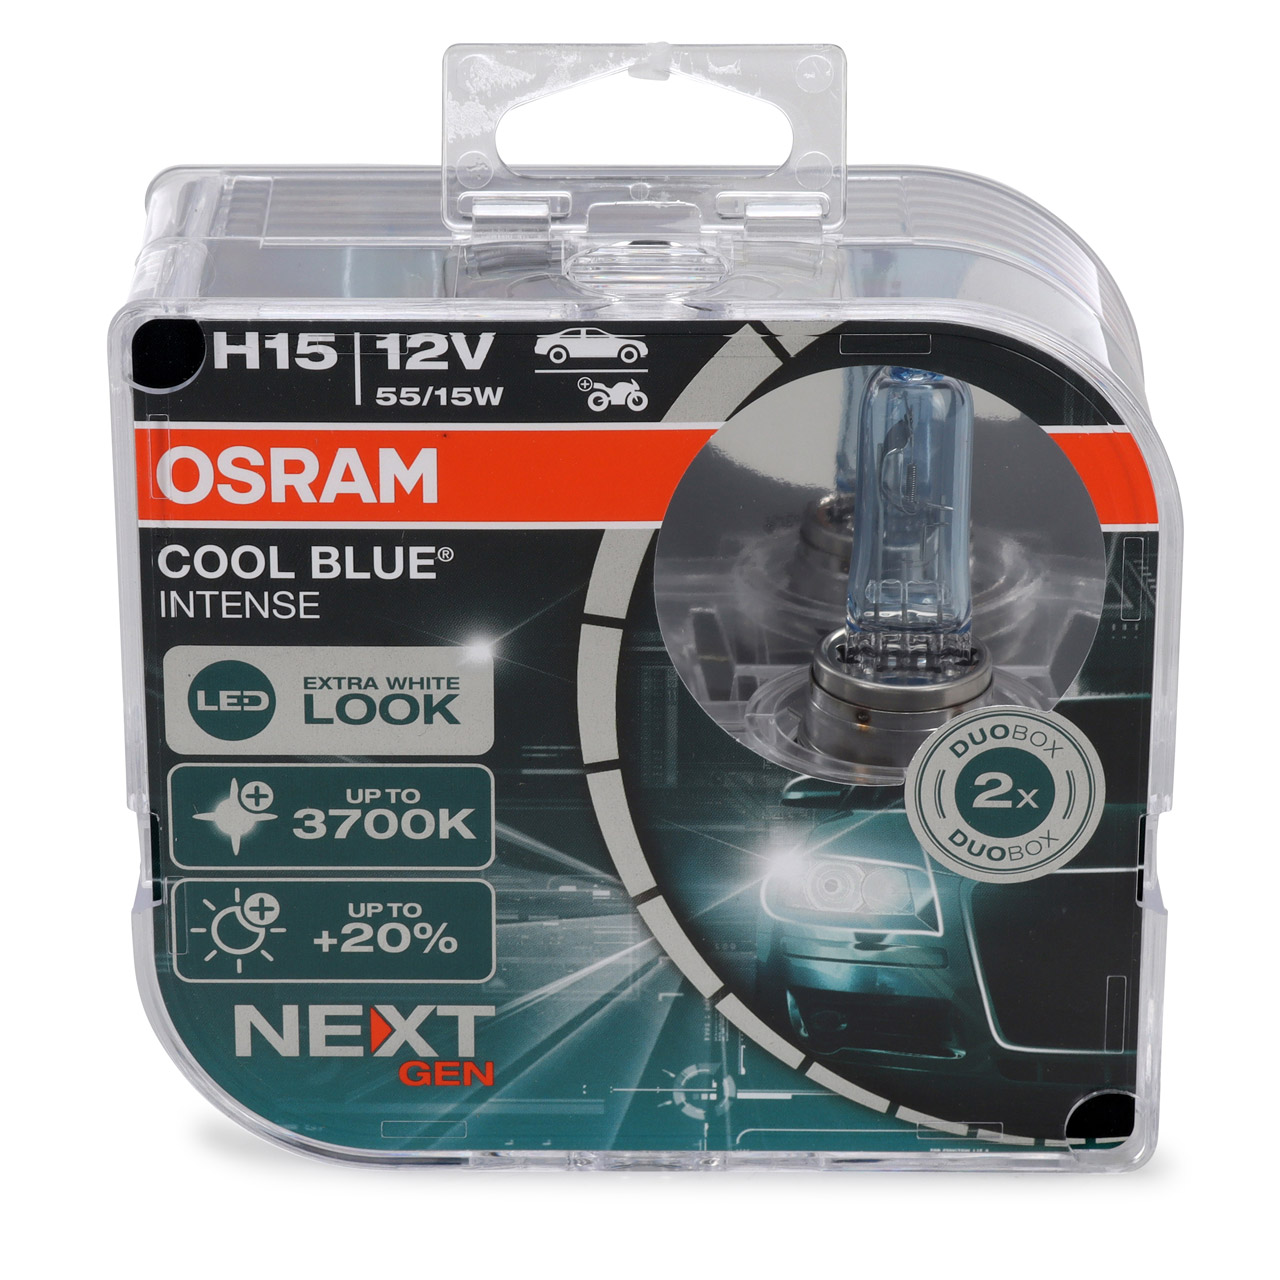 2x OSRAM Glühlampe H15 COOL BLUE INTENSE Next Gen 12V 55/15W PGJ23T-1 +20% 3700K